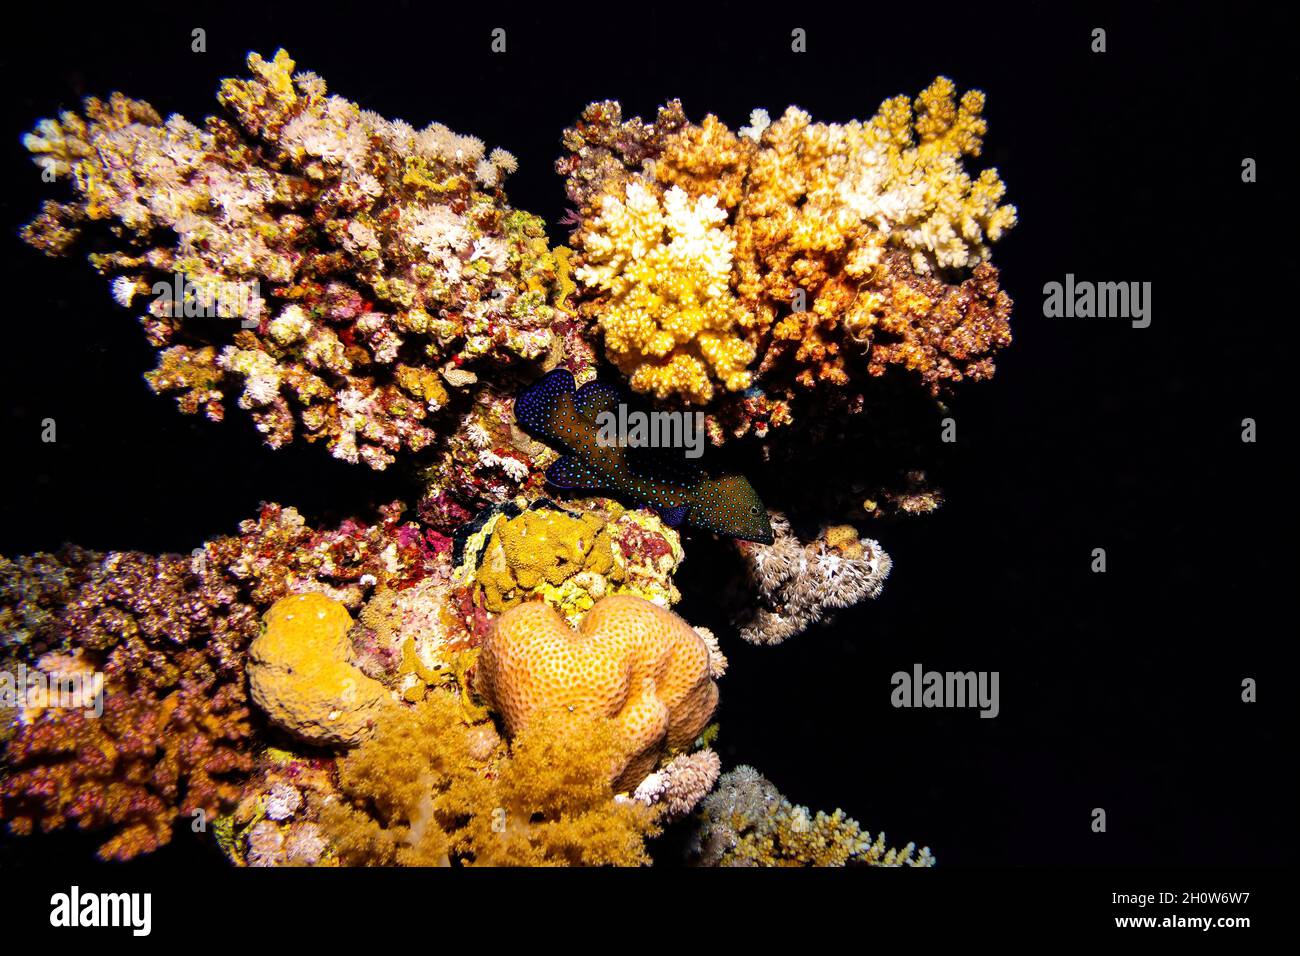 Pfauenzackenbarsch, versteckt unter einem Korallenriff auf schwarzem Hintergrund in der Nacht Stockfoto